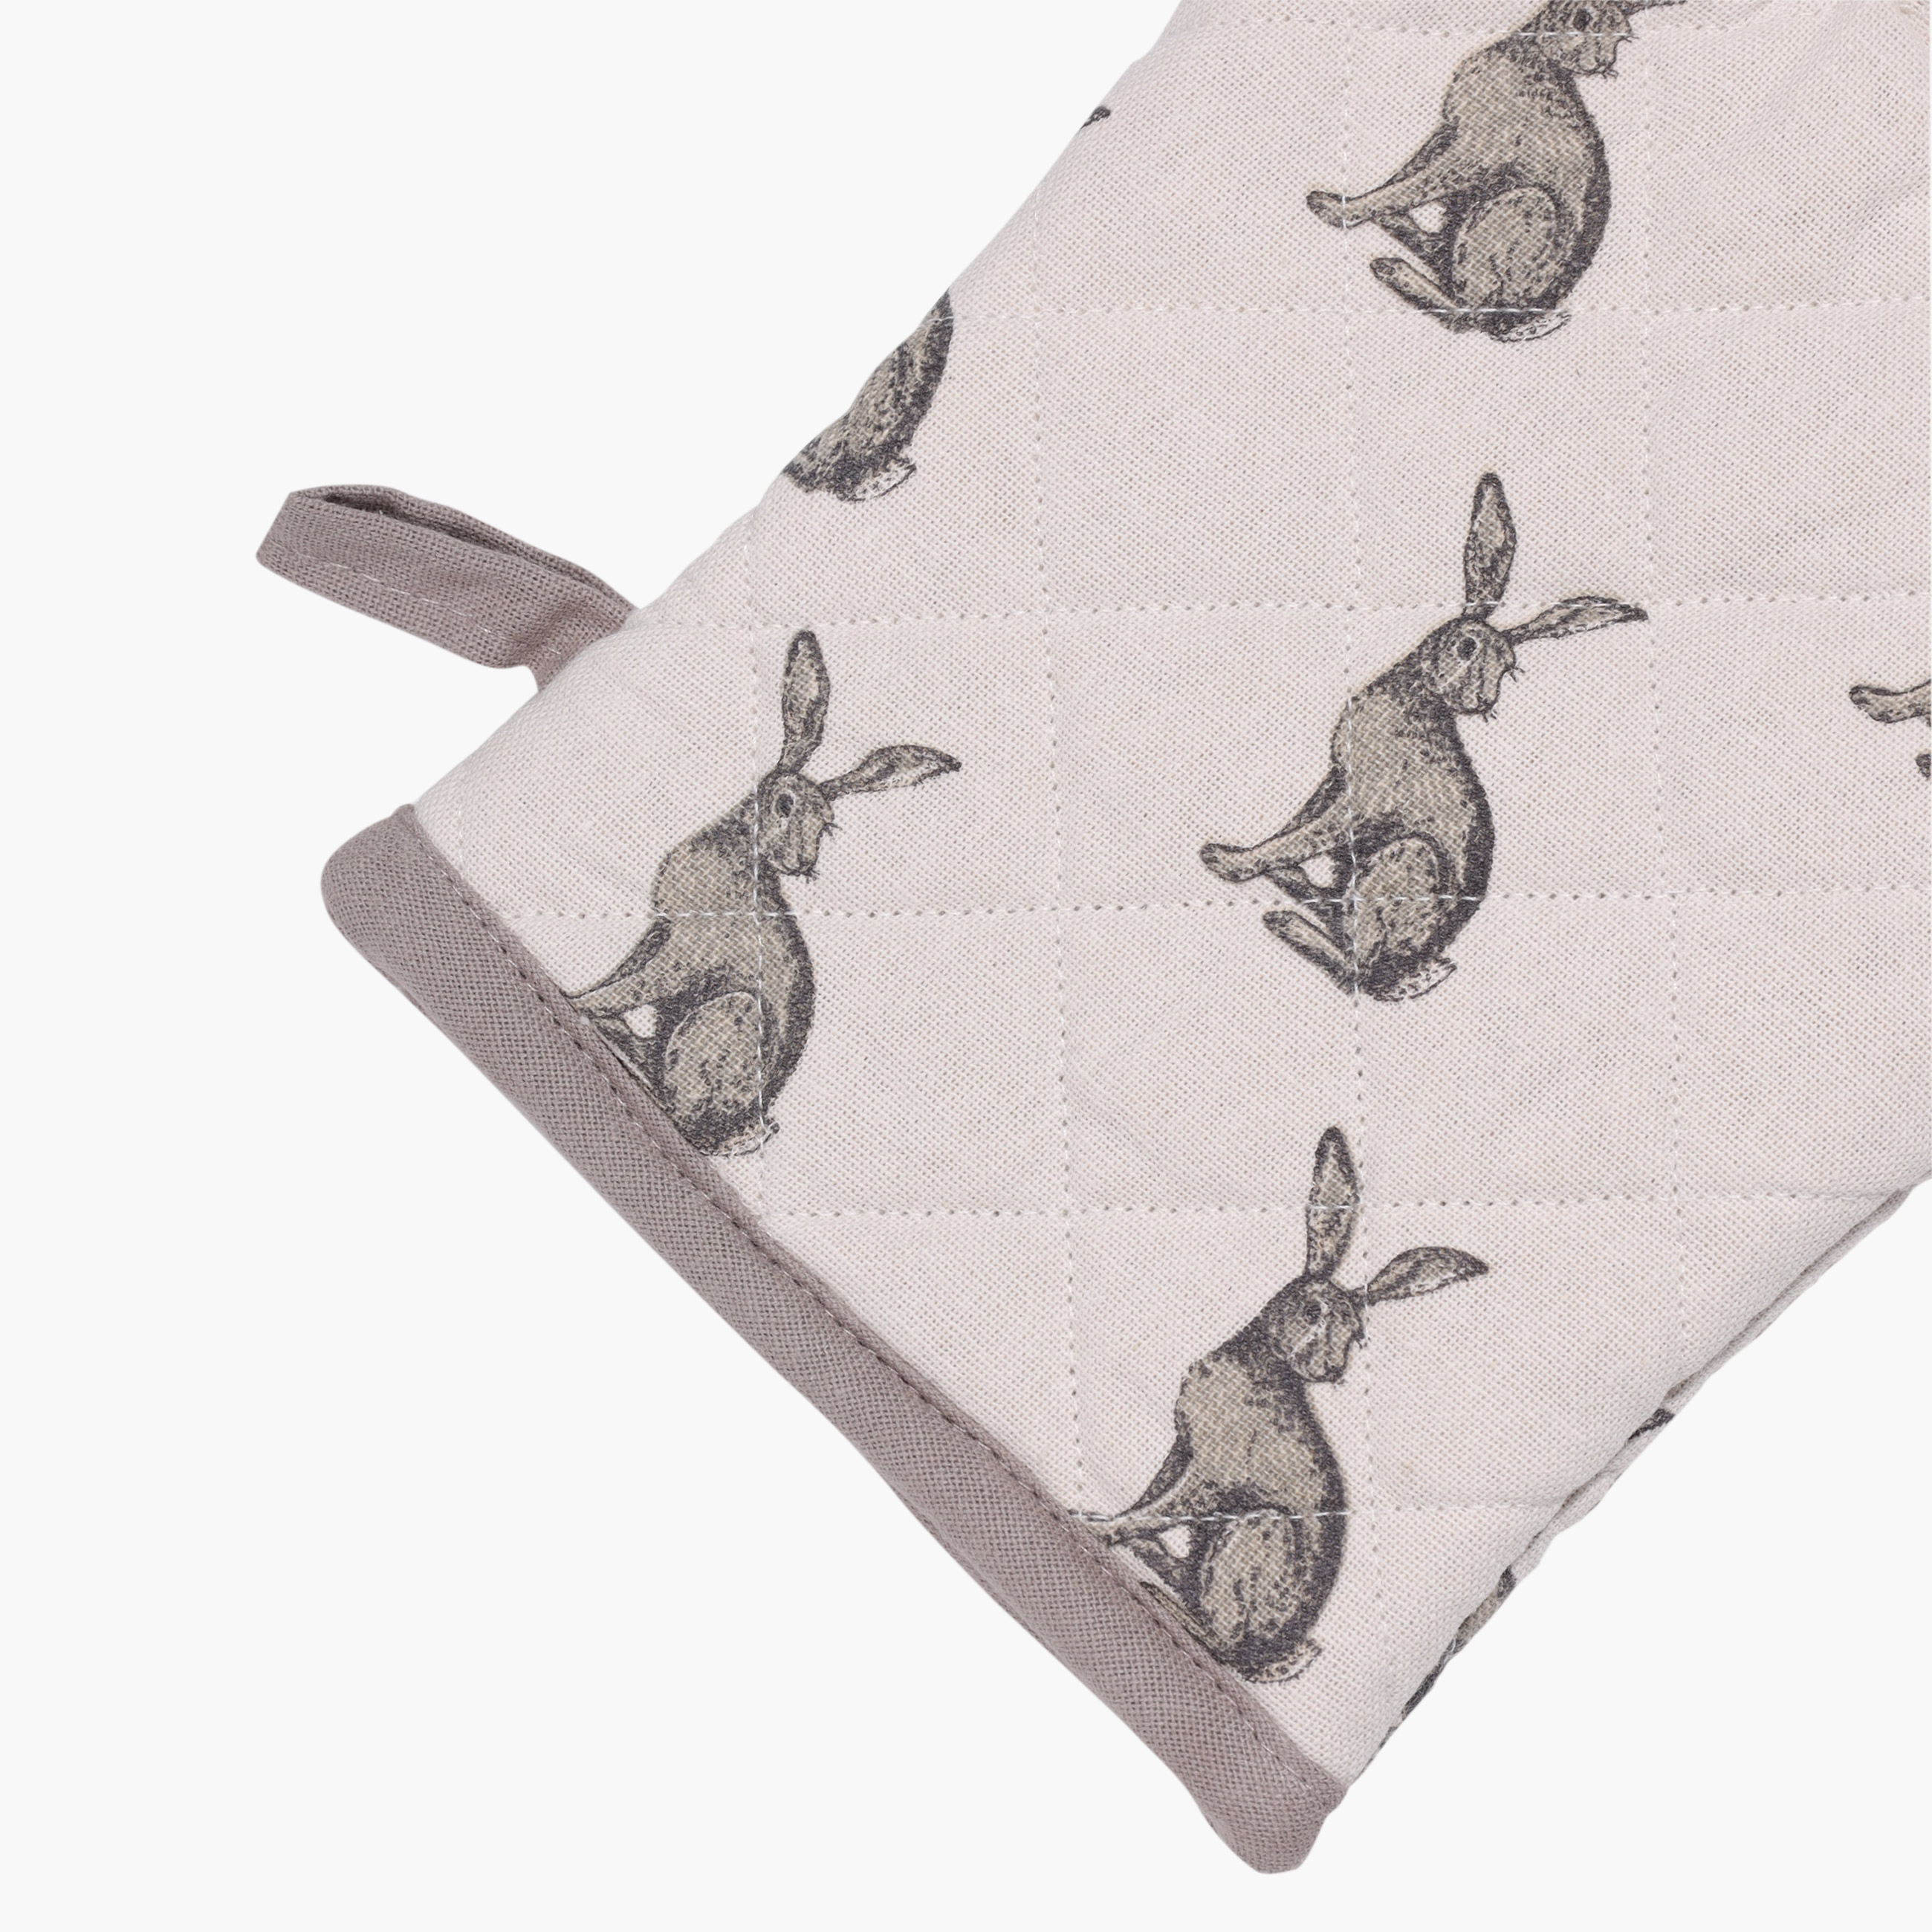 Прихватка-варежка, 17x33 см, хлопок, белая, Кролик, Rabbit grey изображение № 3